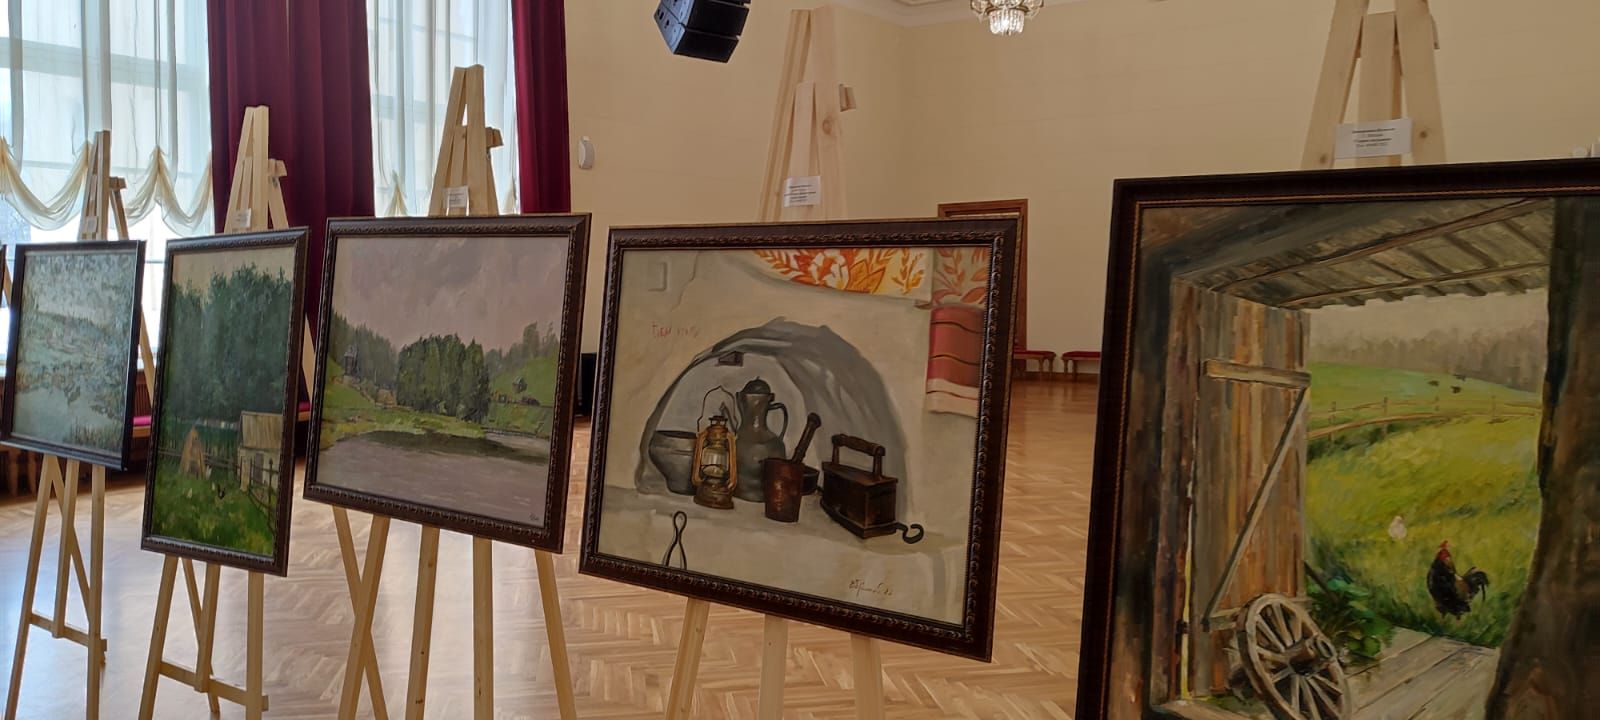 Художники Ибрагимовы из Уруссу организовали передвижную выставку картин